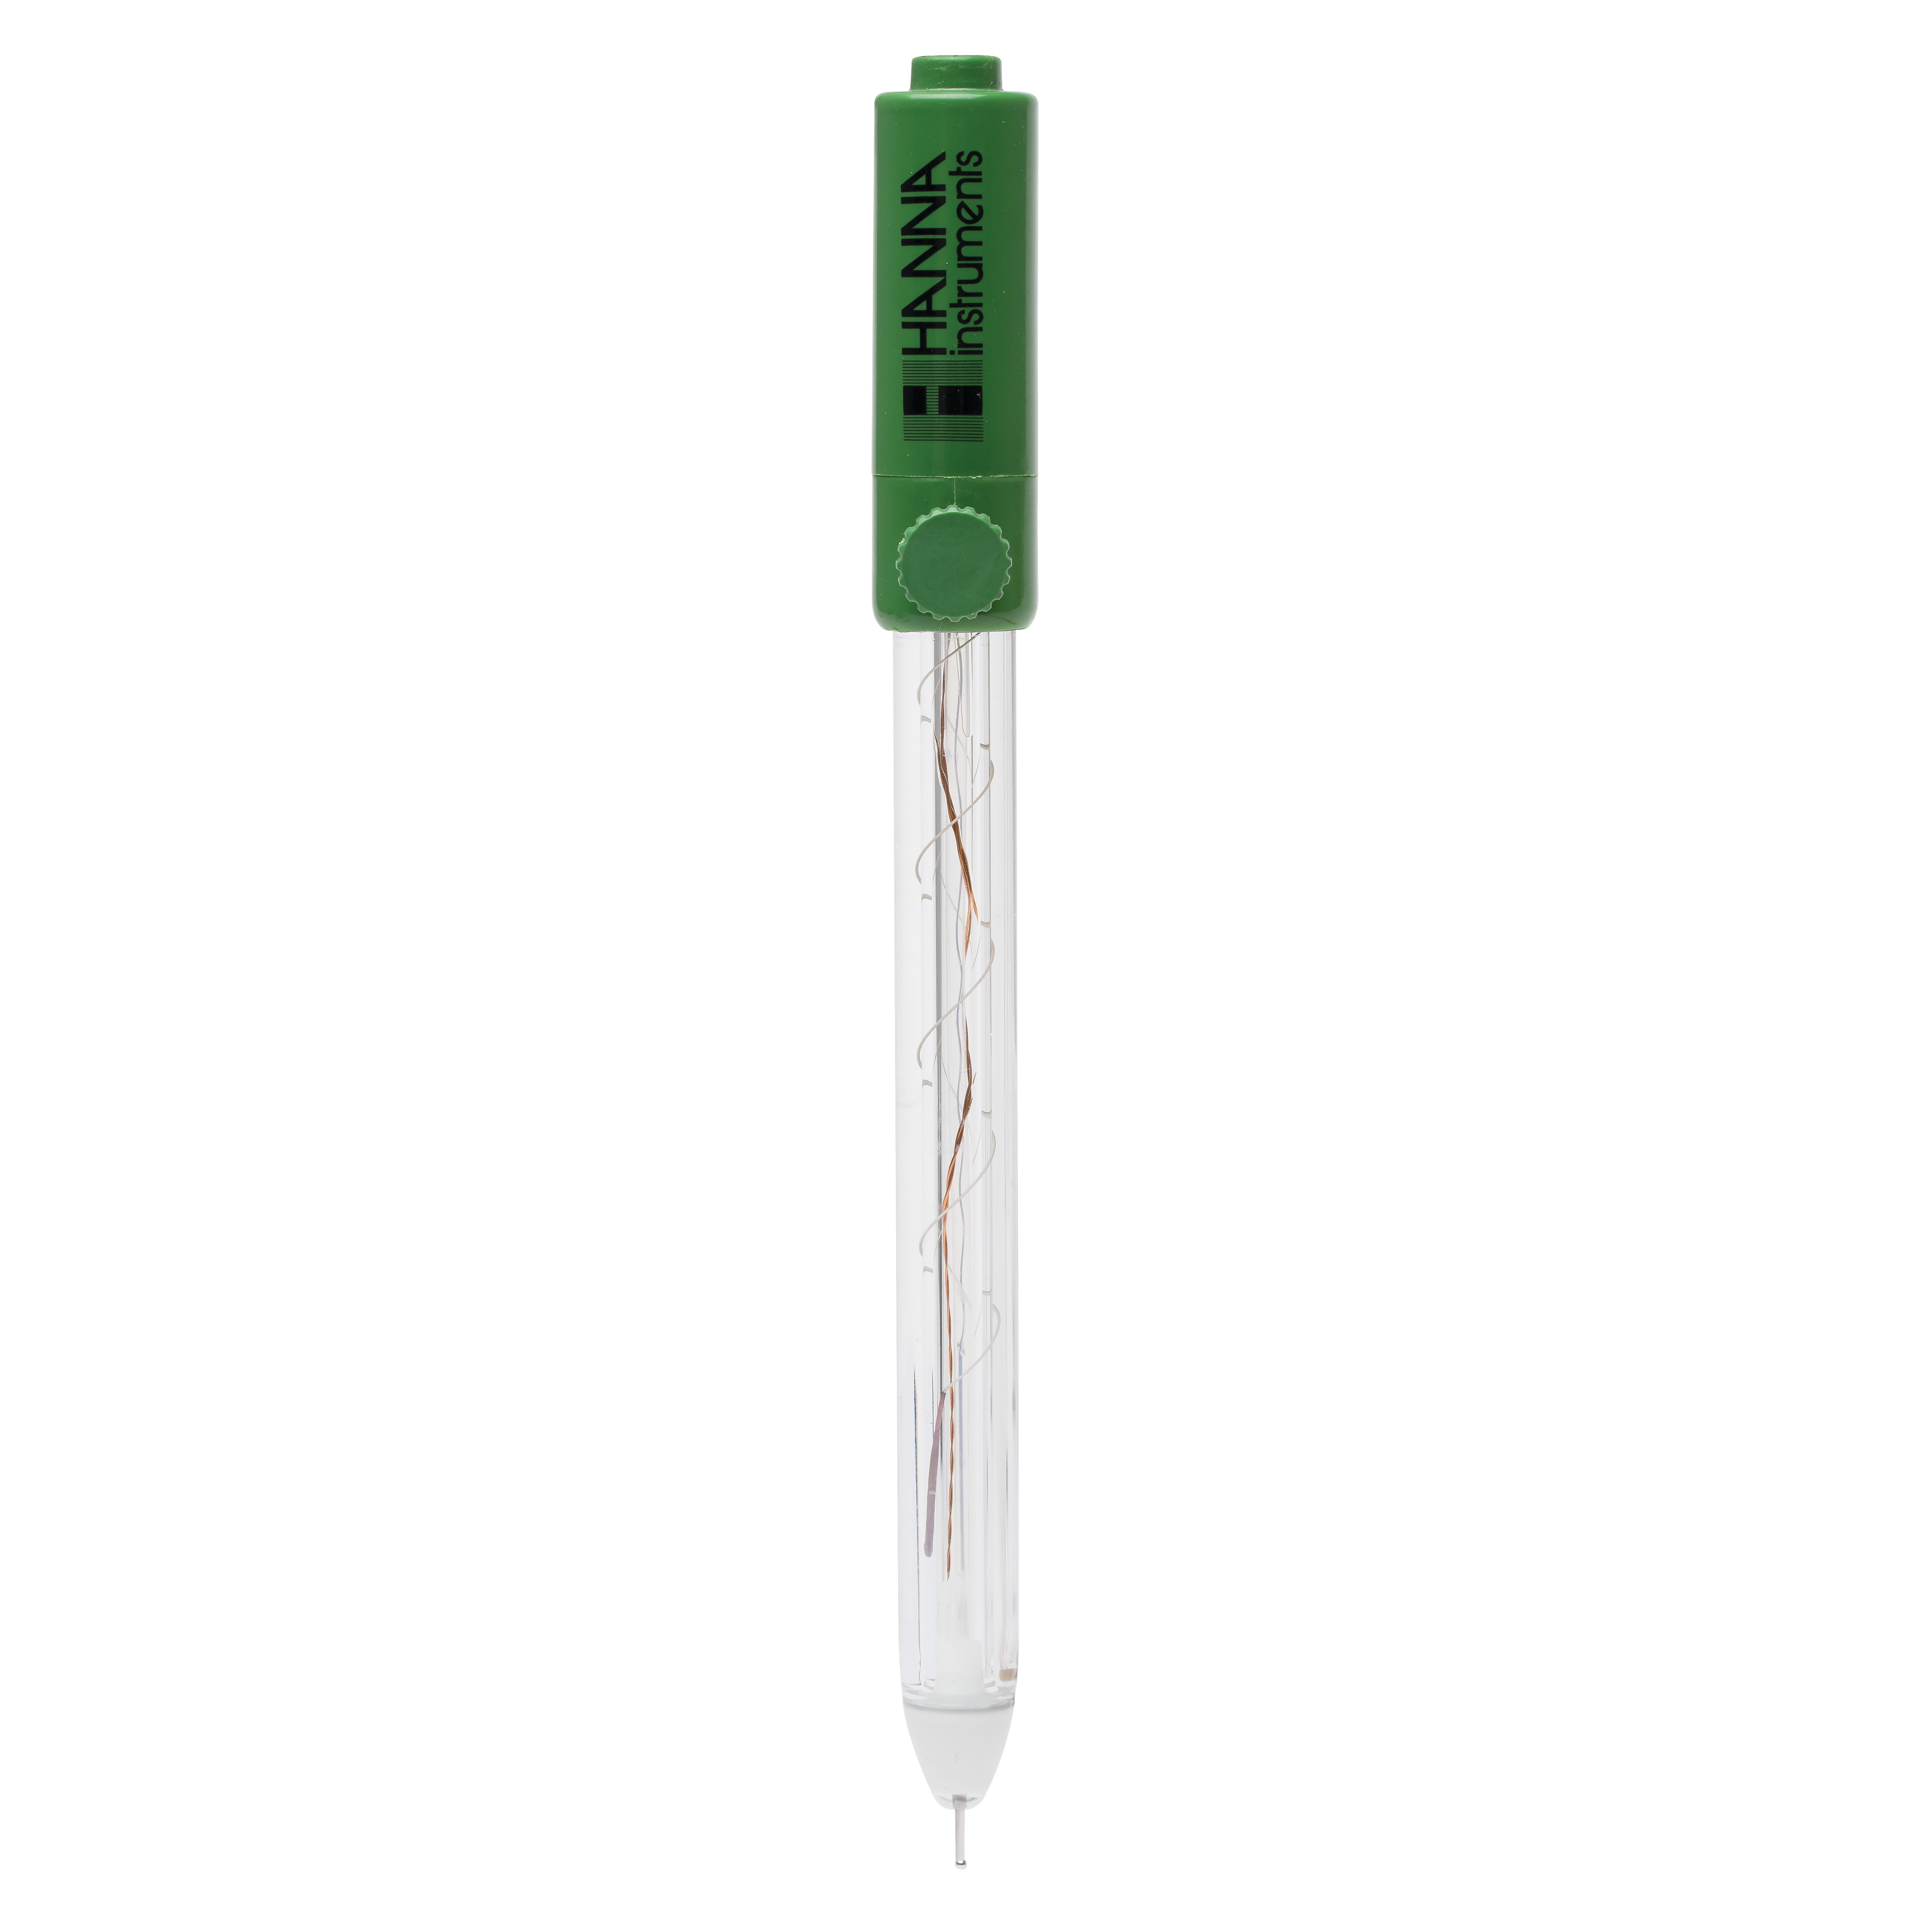 [:lt]HI3618D - Stiklinis ORP elektrodas su DIN jungtimi[:en]HI3618D - Glass Body ORP Electrode with DIN Connector[:]